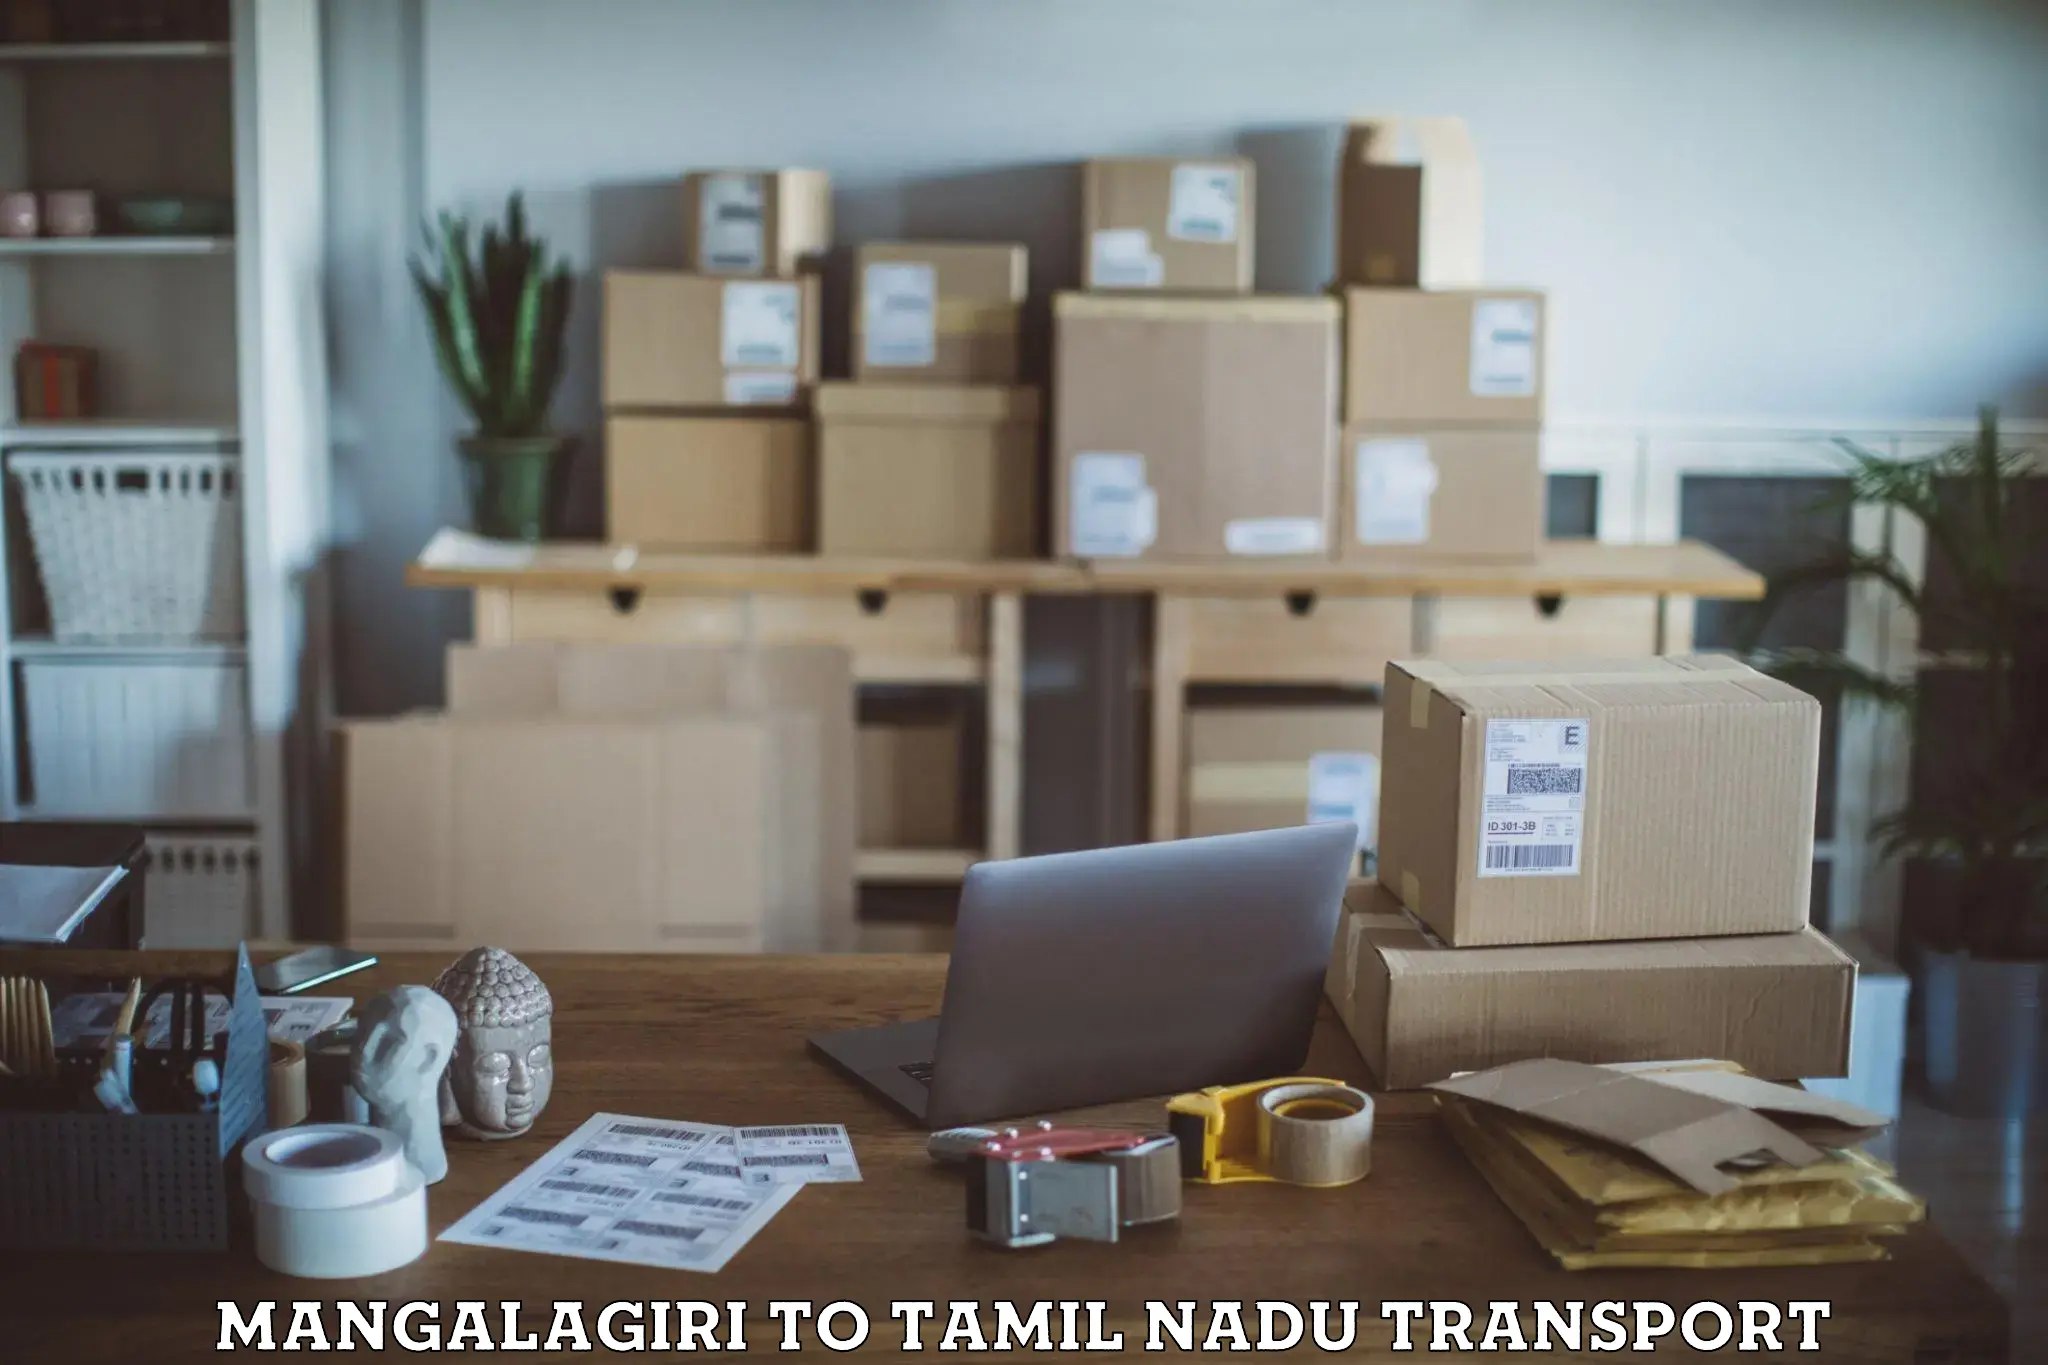 India truck logistics services Mangalagiri to Tamil Nadu